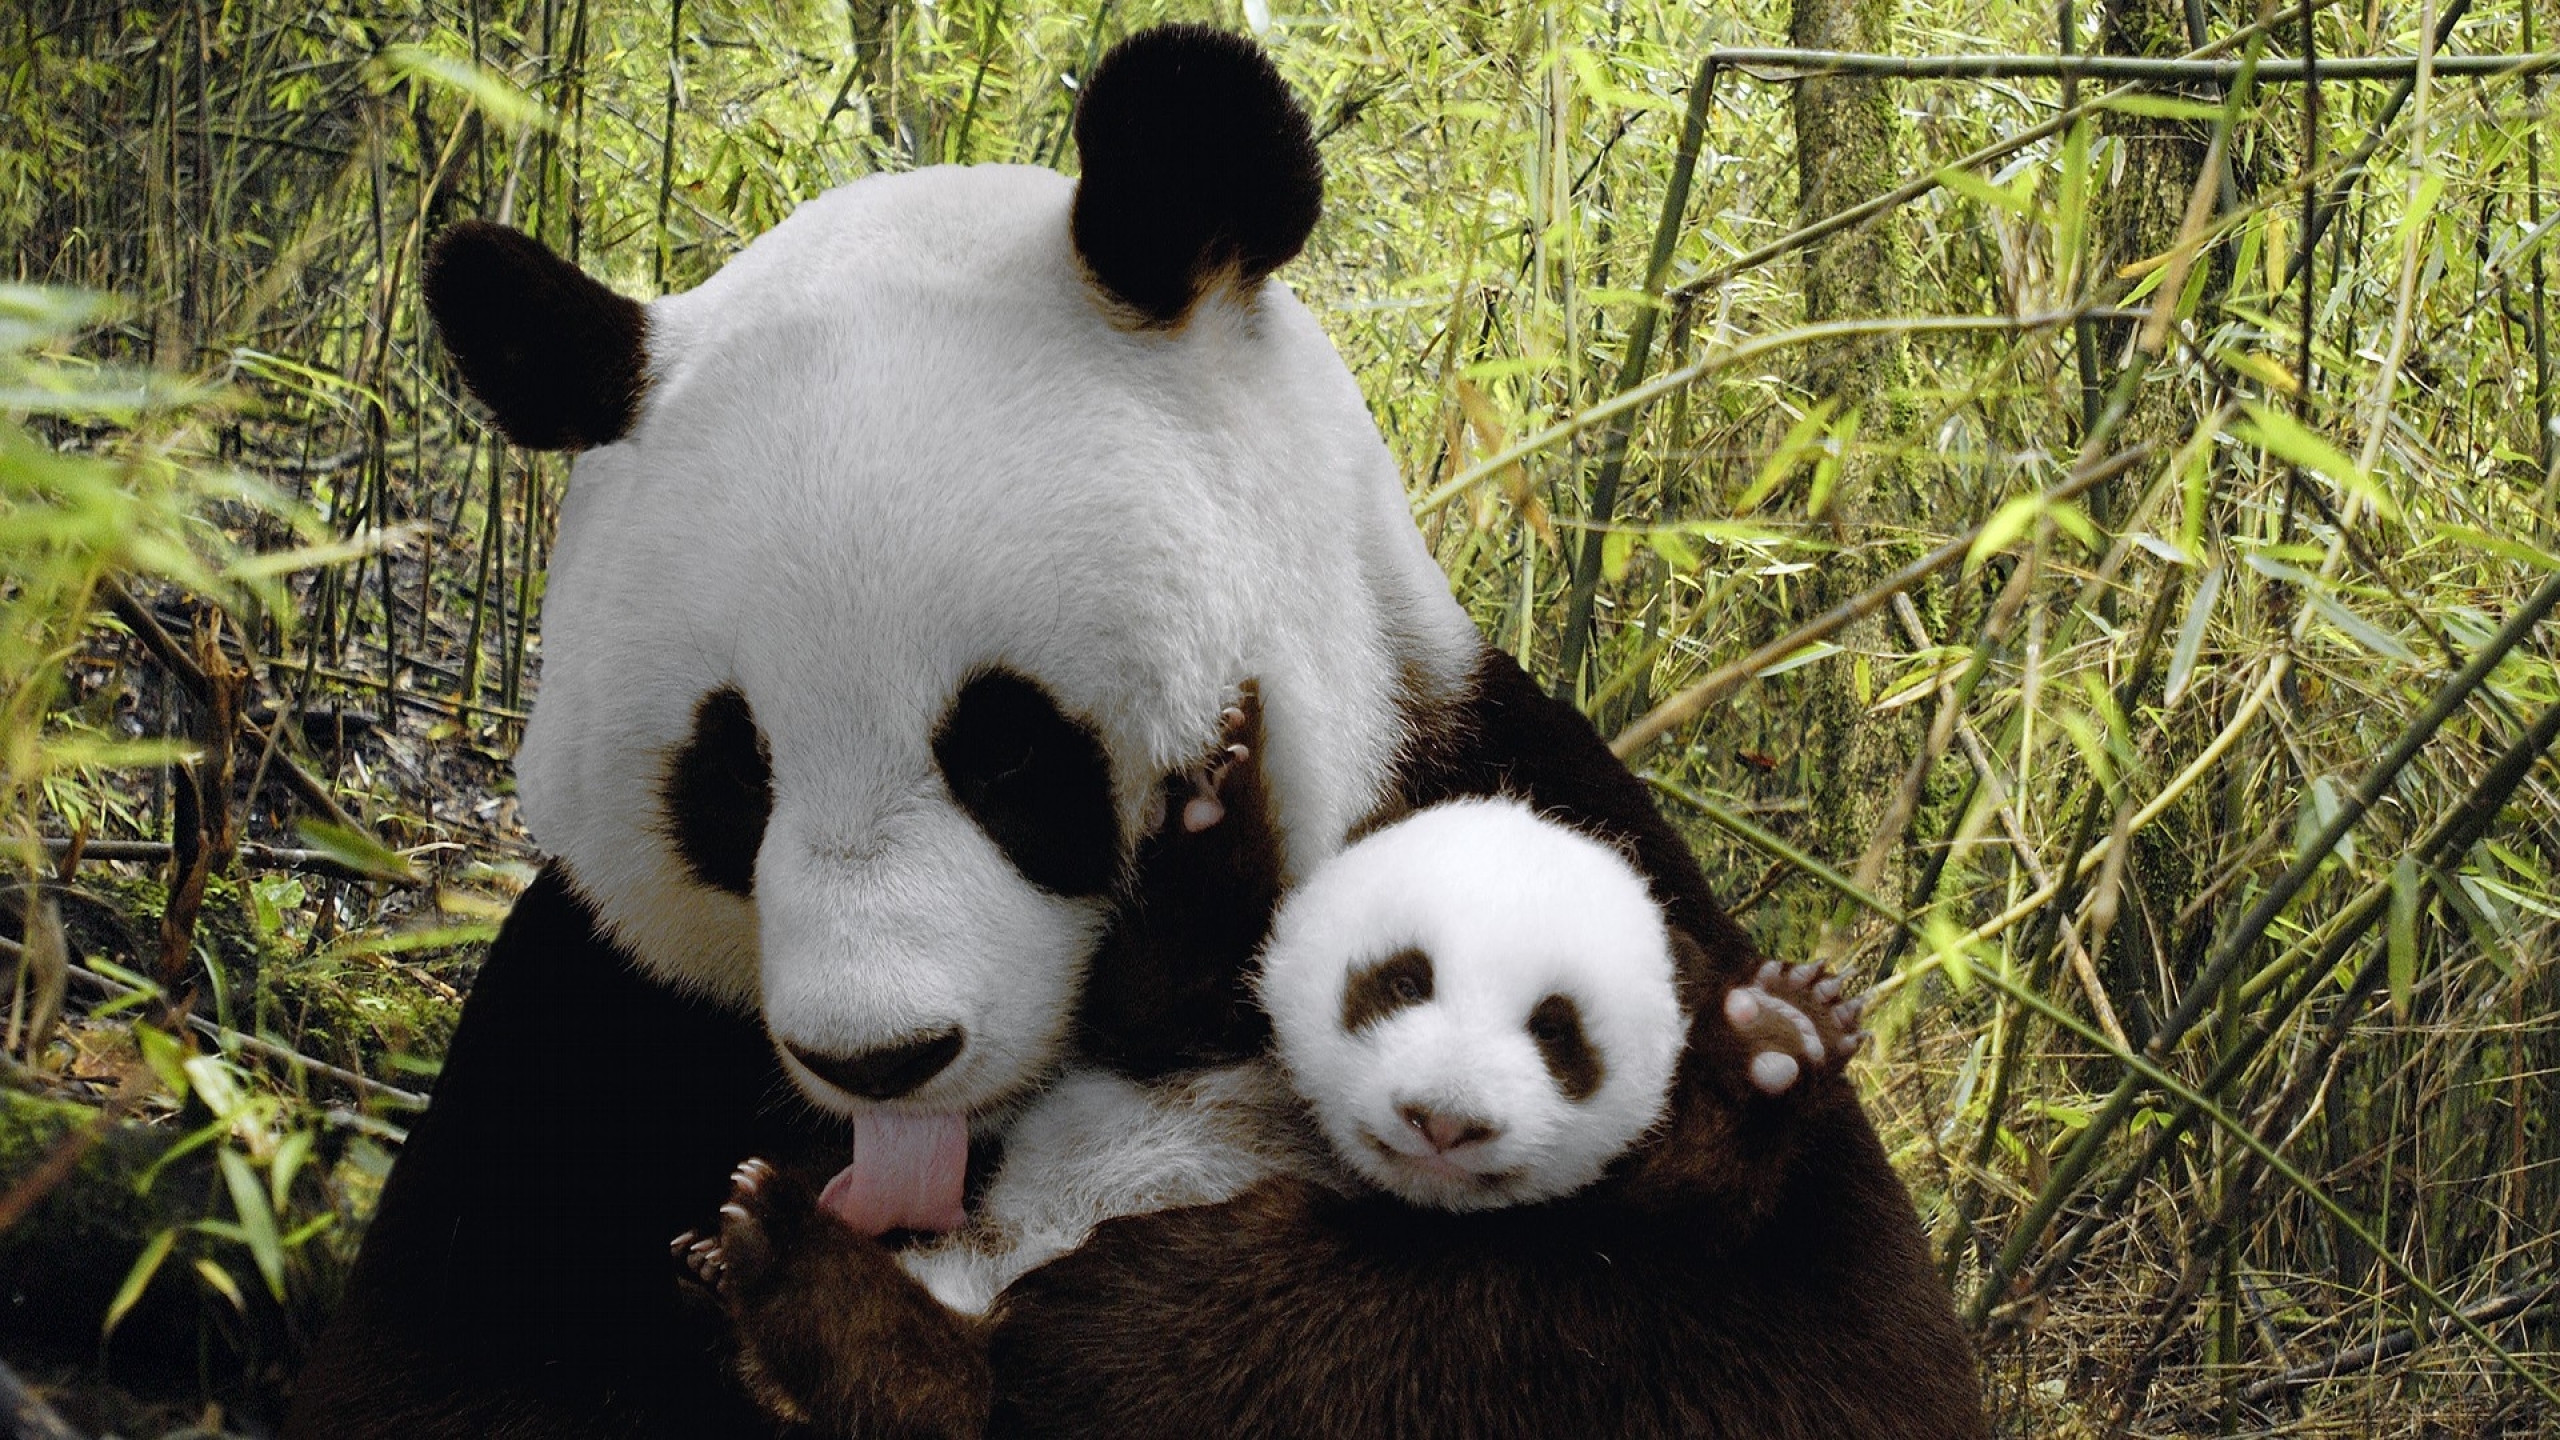 Great panda. Медвежонок Панда. Большая Панда или бамбуковый медведь. Большая Панда с детенышем. Панда бамбуковый медведь.